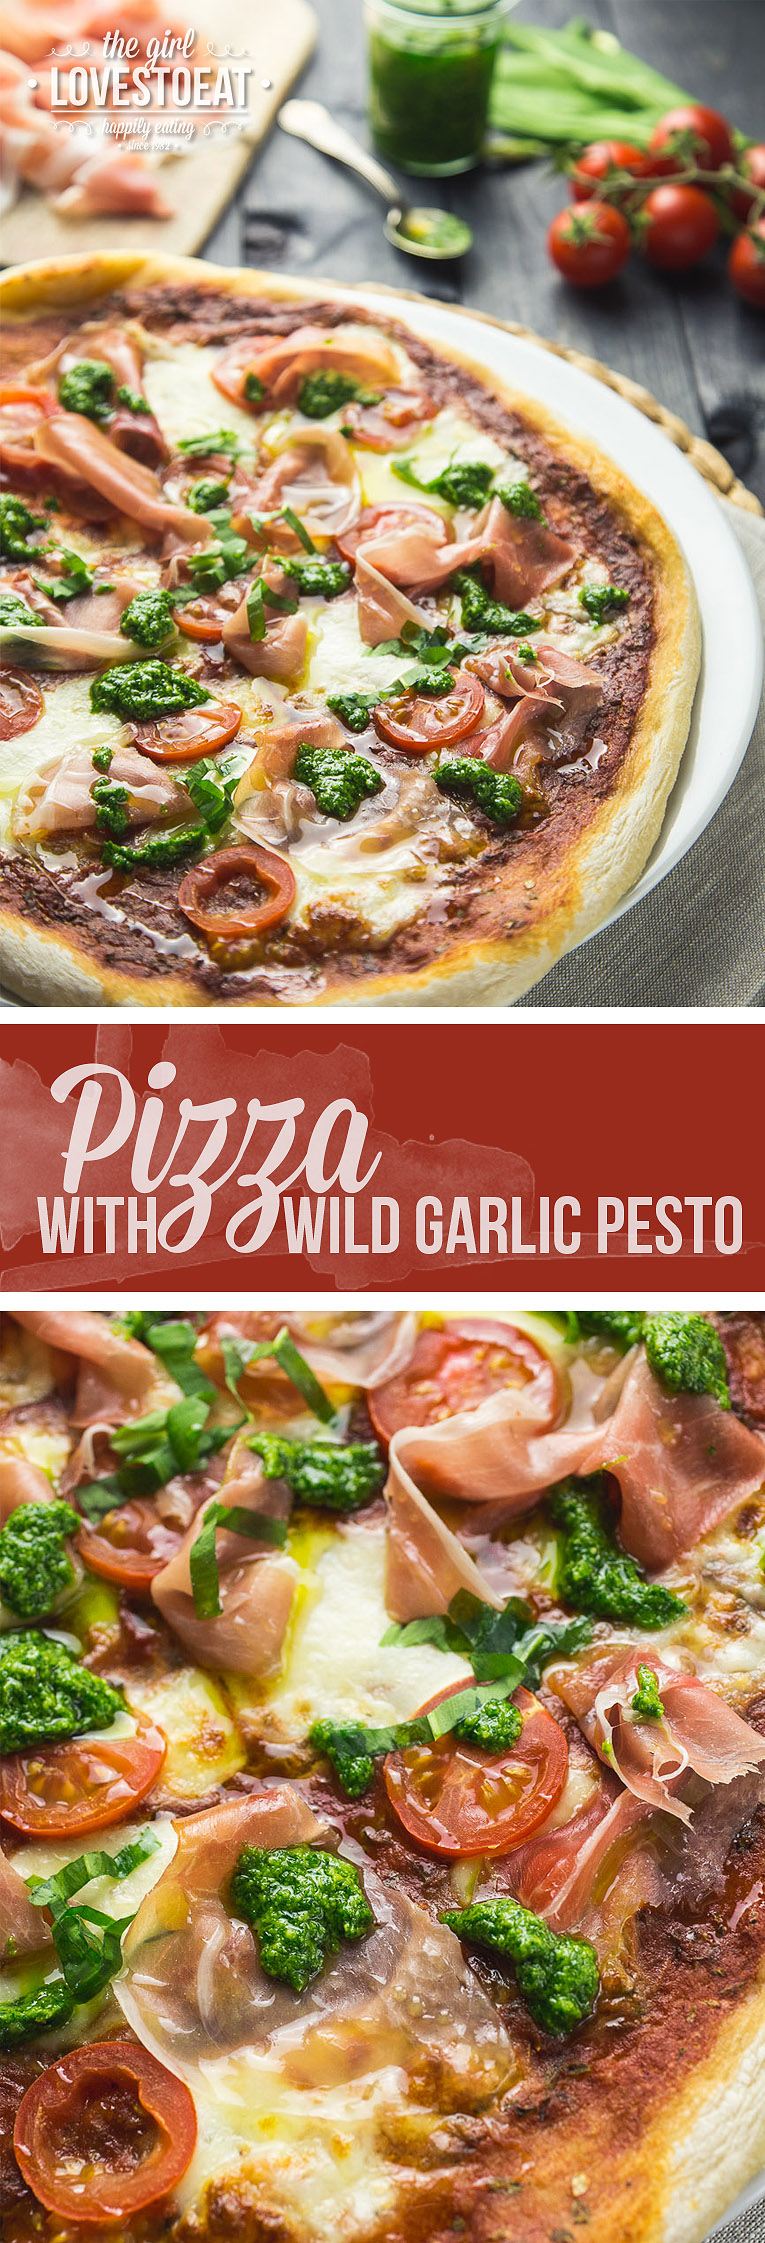 WIld garlic pesto pizza with prosciutto | thegirllovestoeat.com